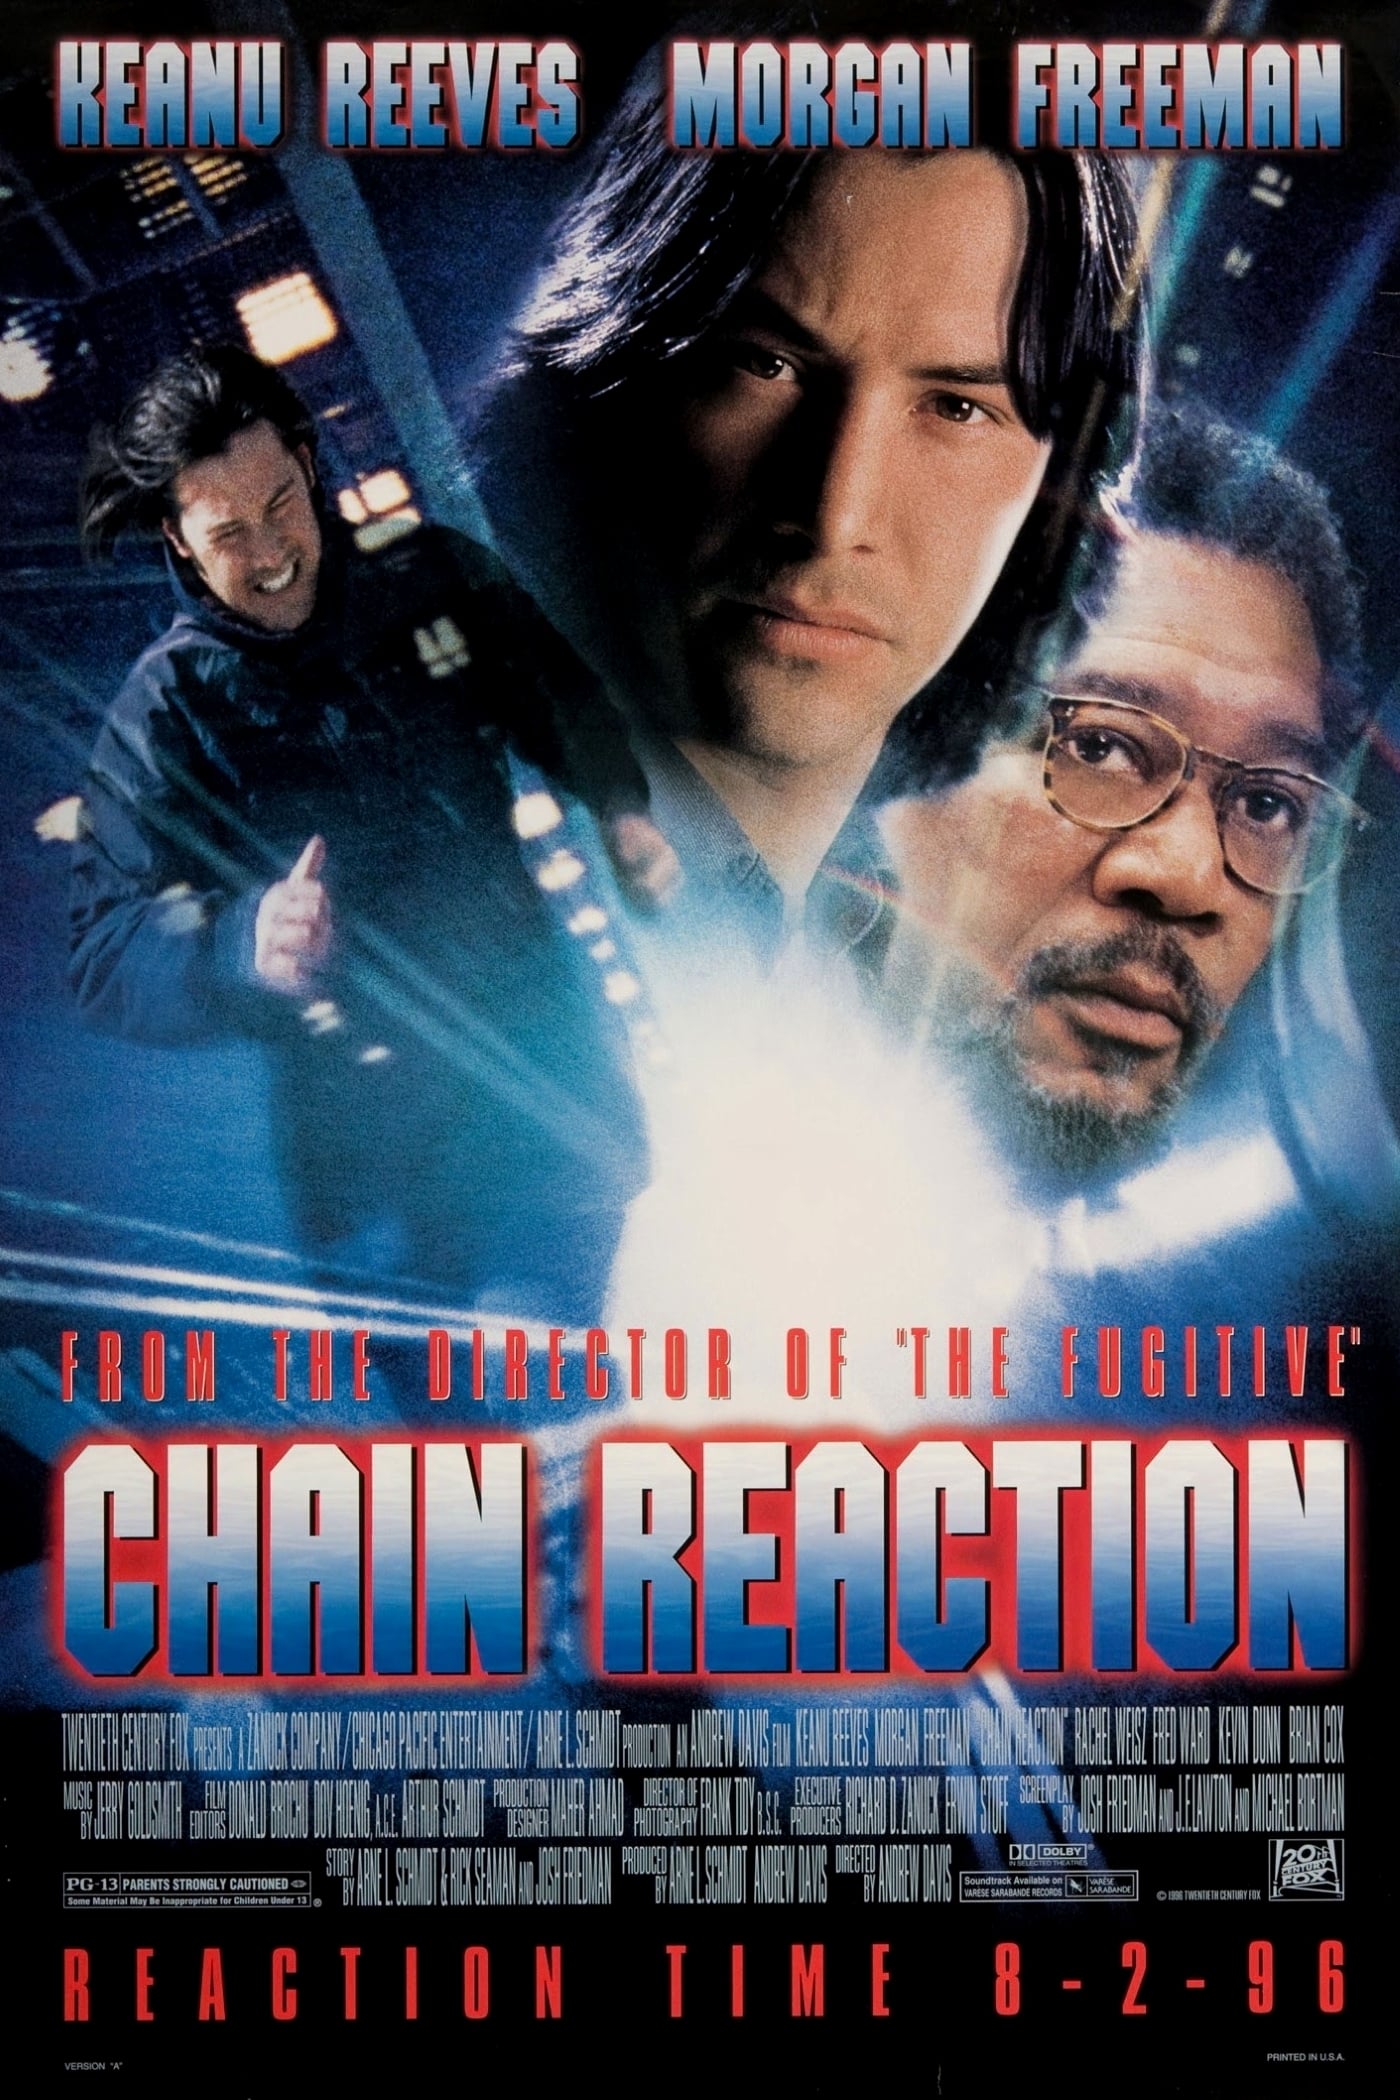 ดูหนังออนไลน์ฟรี Chain Reaction 1996 เร็วพลิกนรก